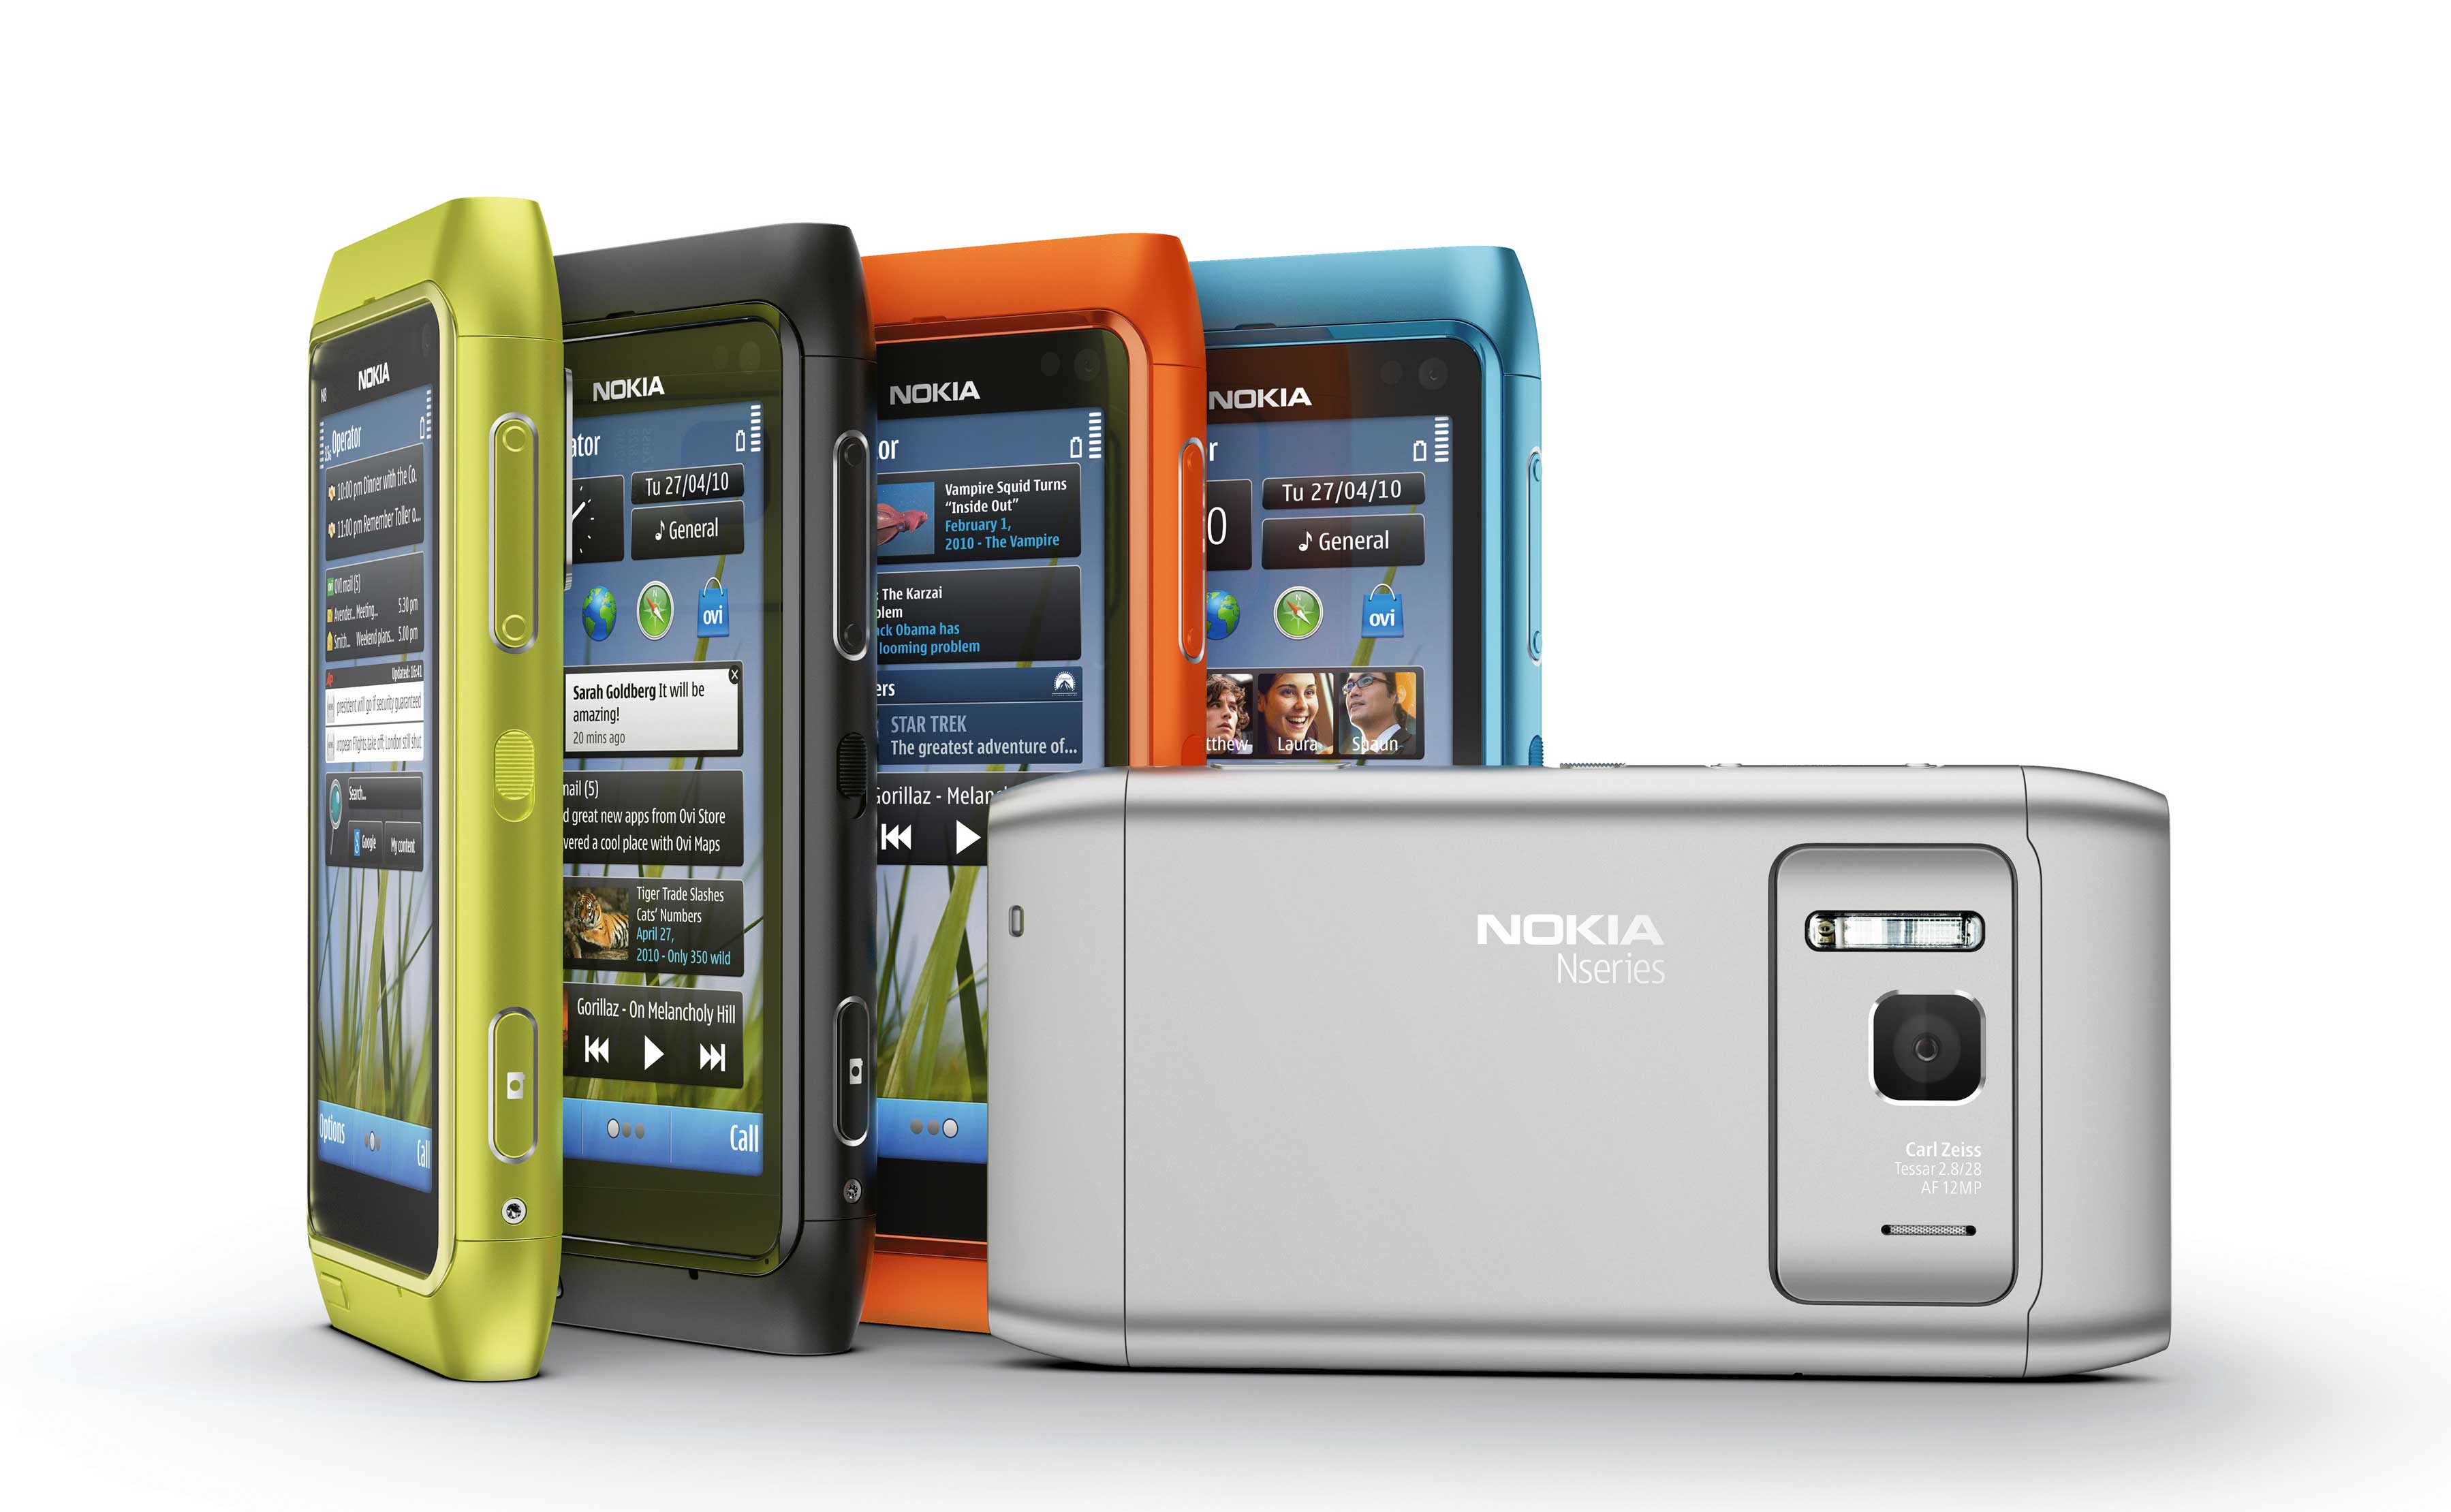 Nokia N8 N8 Nokia N8 نوكيا Nokia N8 N8 صور N8 نوكيا N8 موبايل N8